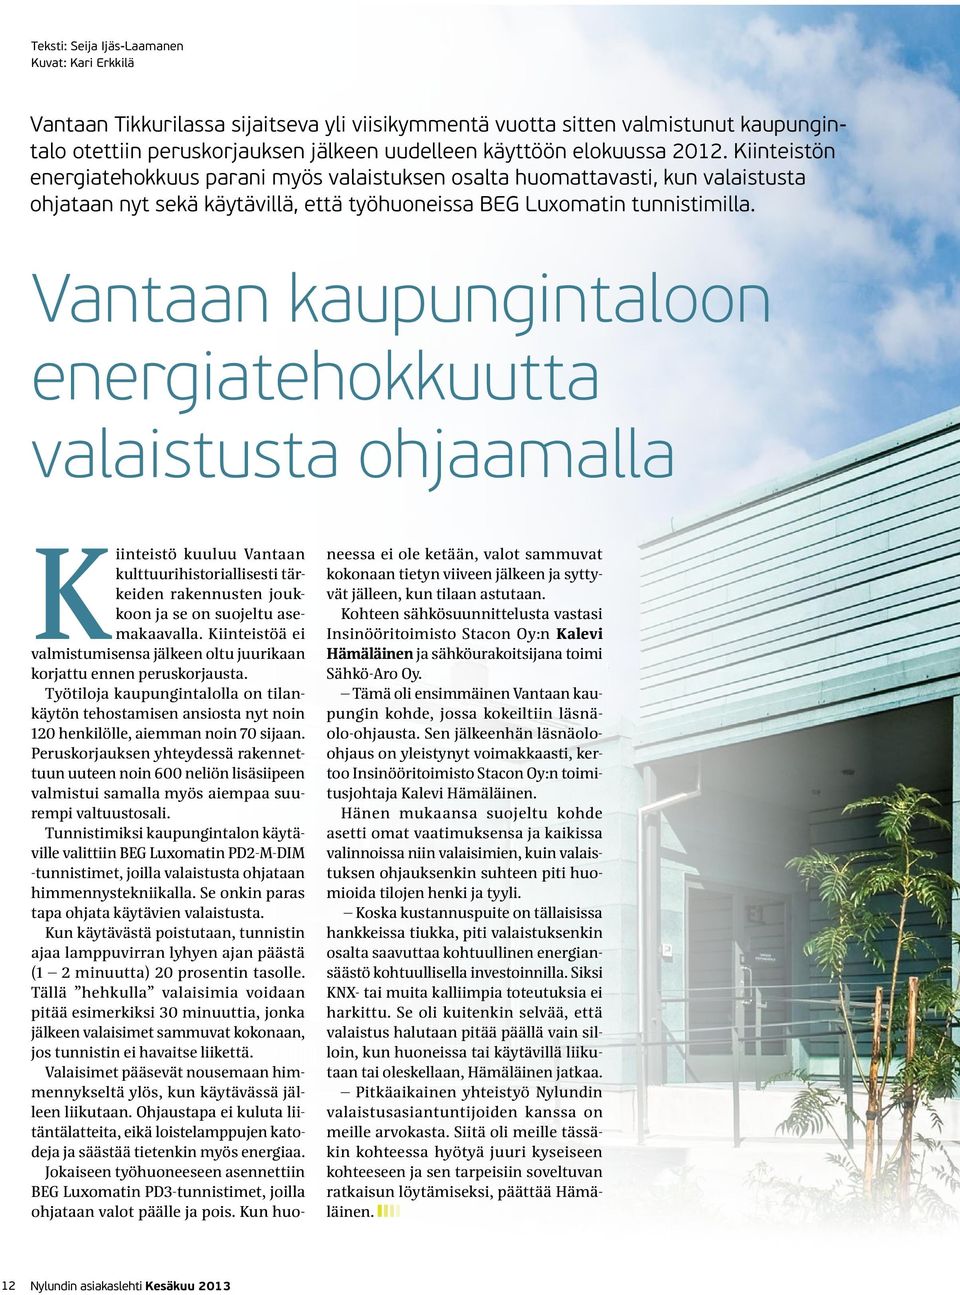 Vantaan kaupungintaloon energiatehokkuutta valaistusta ohjaamalla Kiinteistö kuuluu Vantaan kulttuurihistoriallisesti tärkeiden rakennusten joukkoon ja se on suojeltu asemakaavalla.